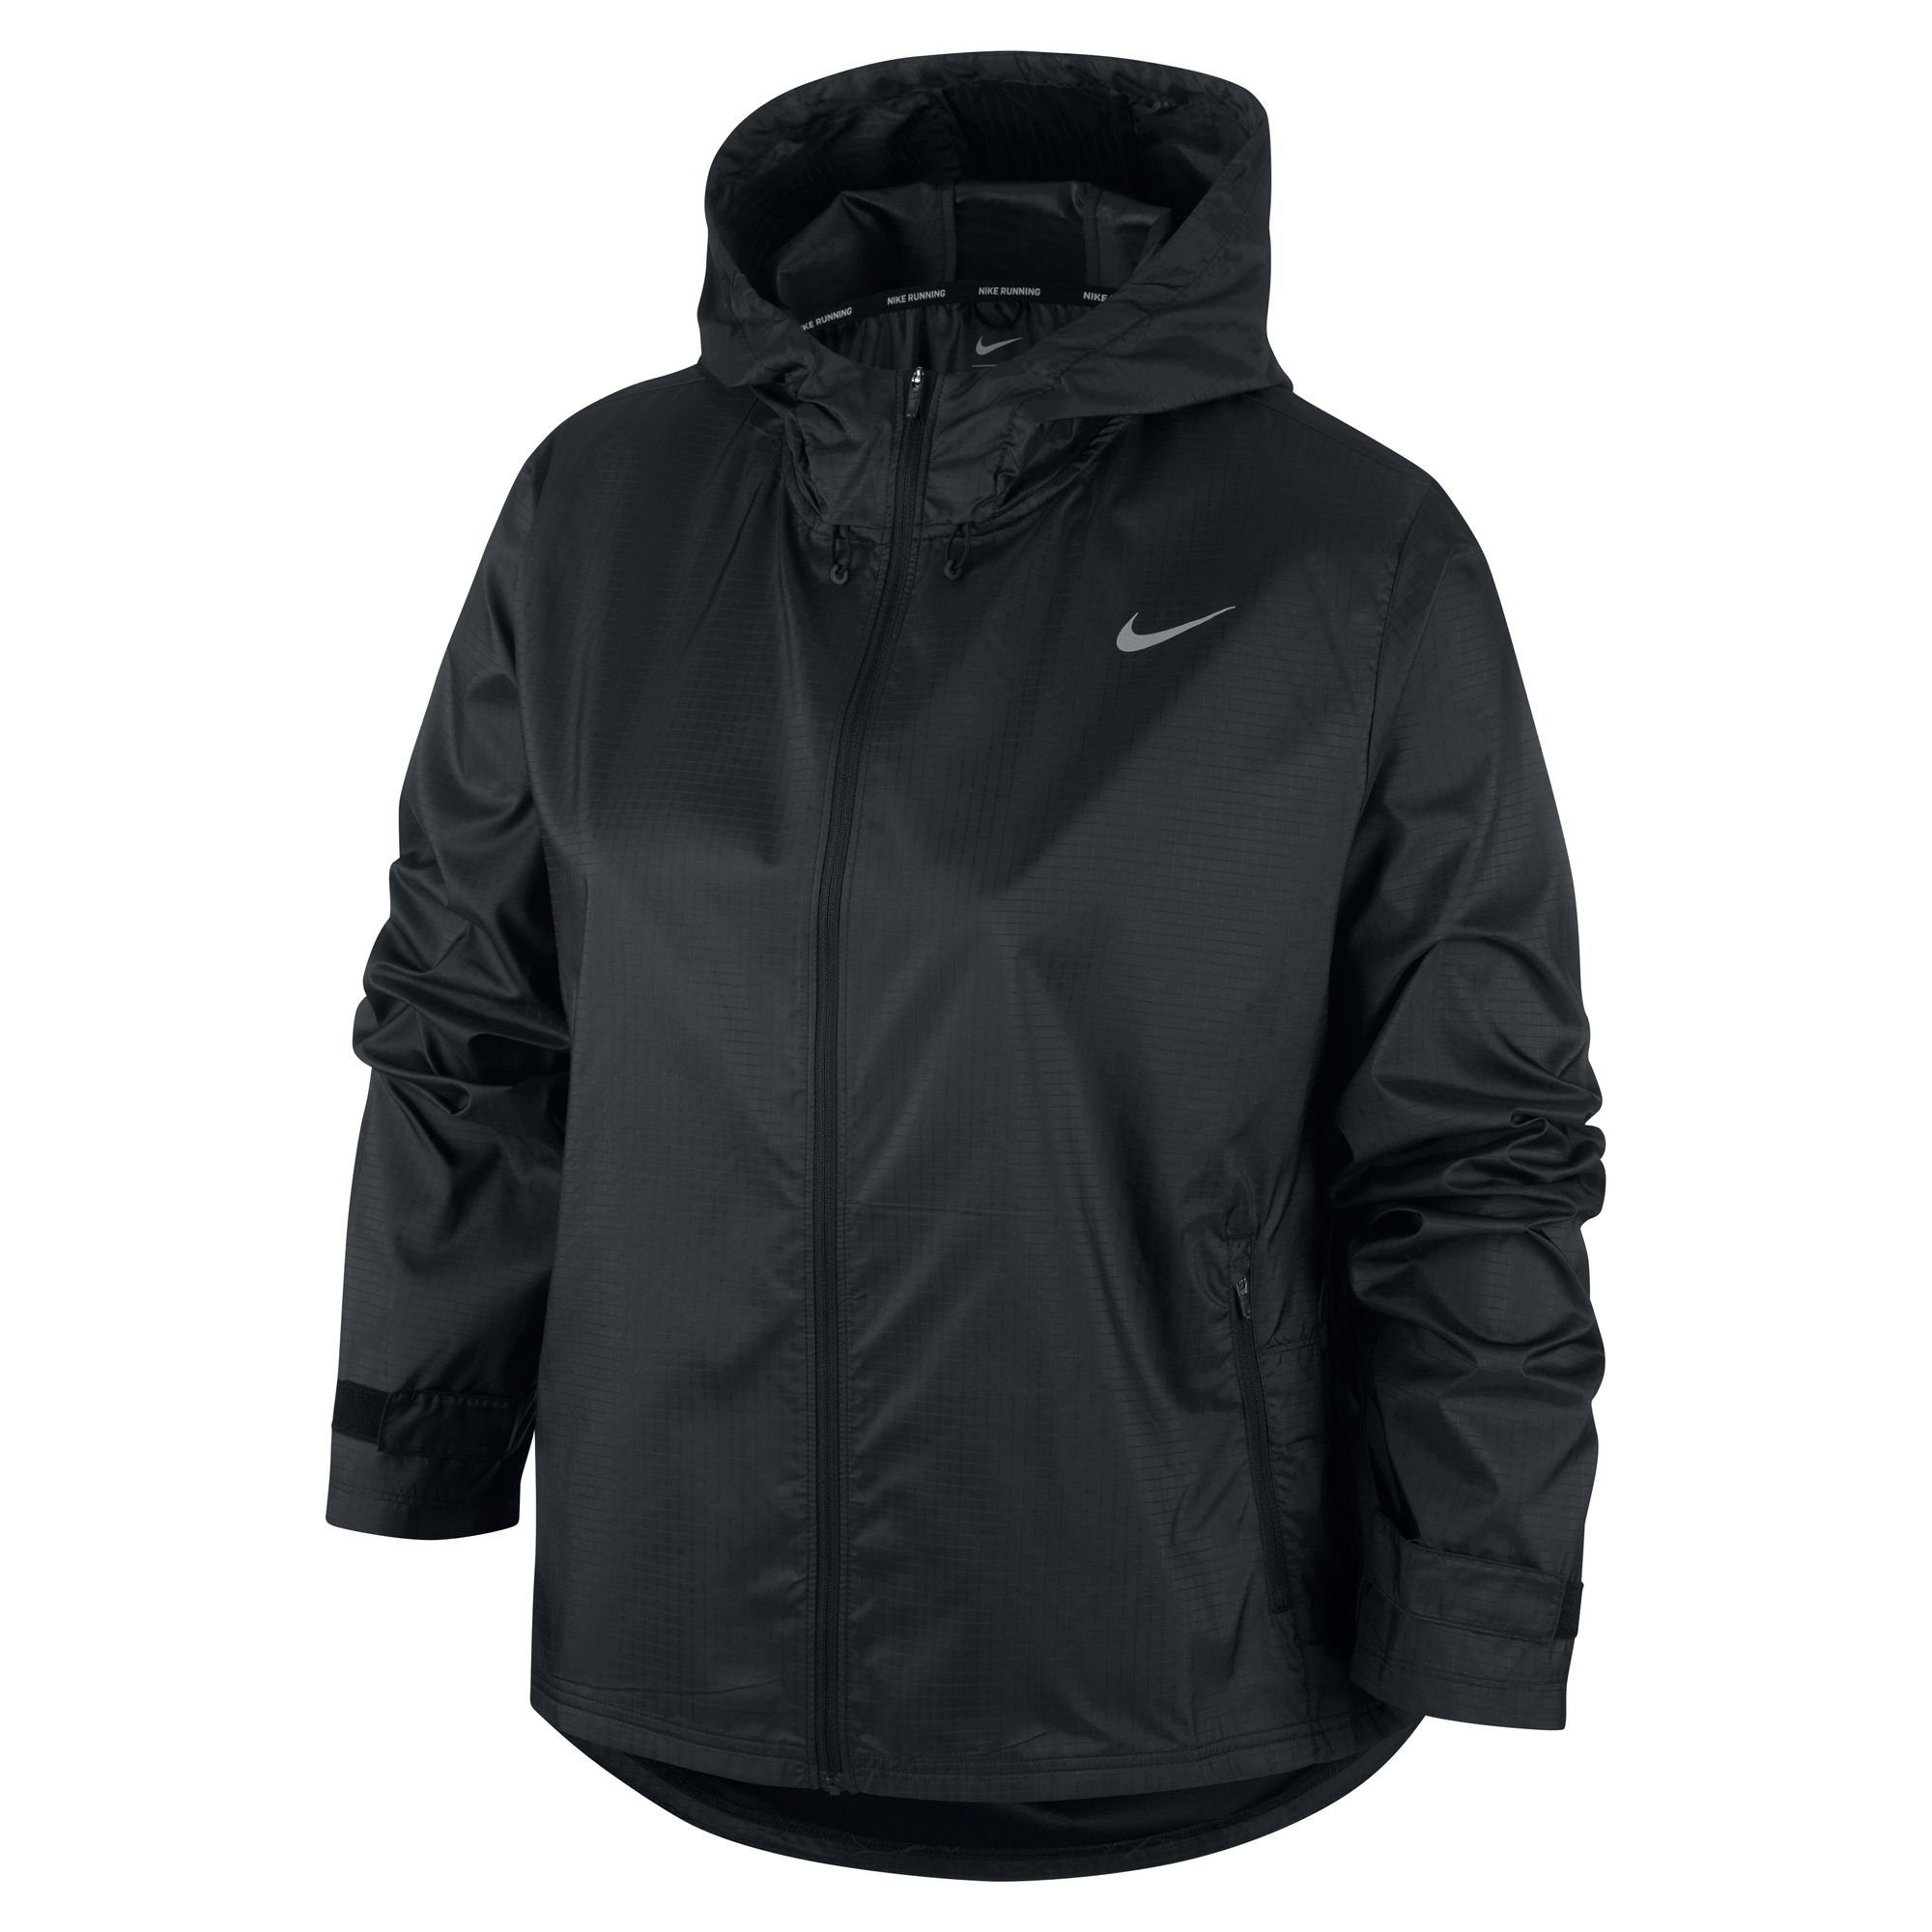 schwarz Essential Jacket Laufjacke Nike Running Women's